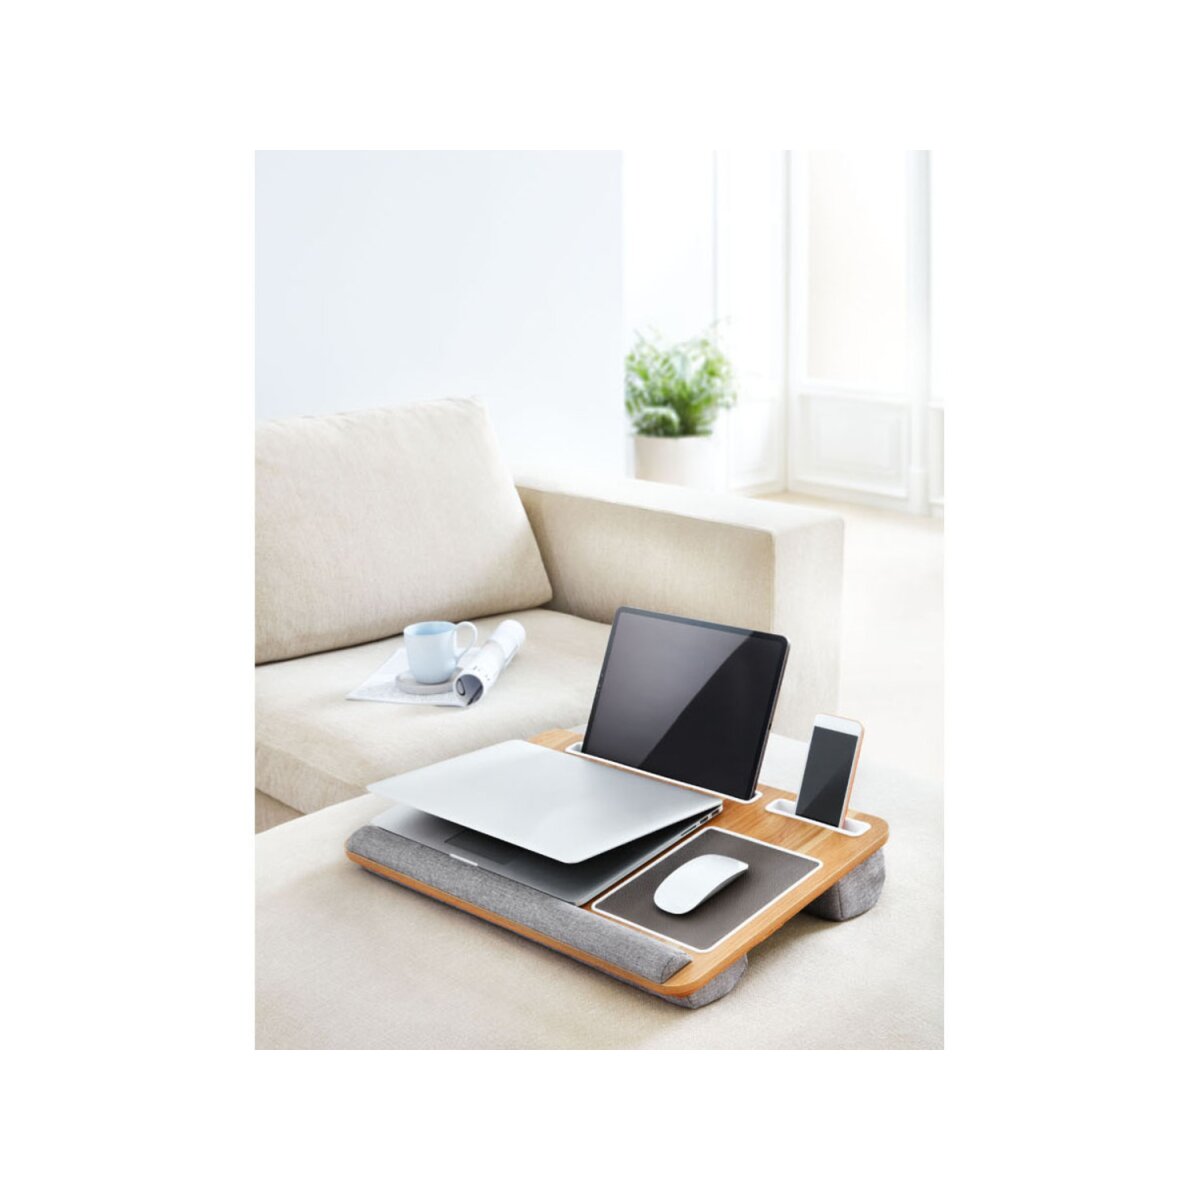 LIVARNO home Laptopunterlage, komfortabel gepolstert B-Ware neuwertig, - 16,99 €